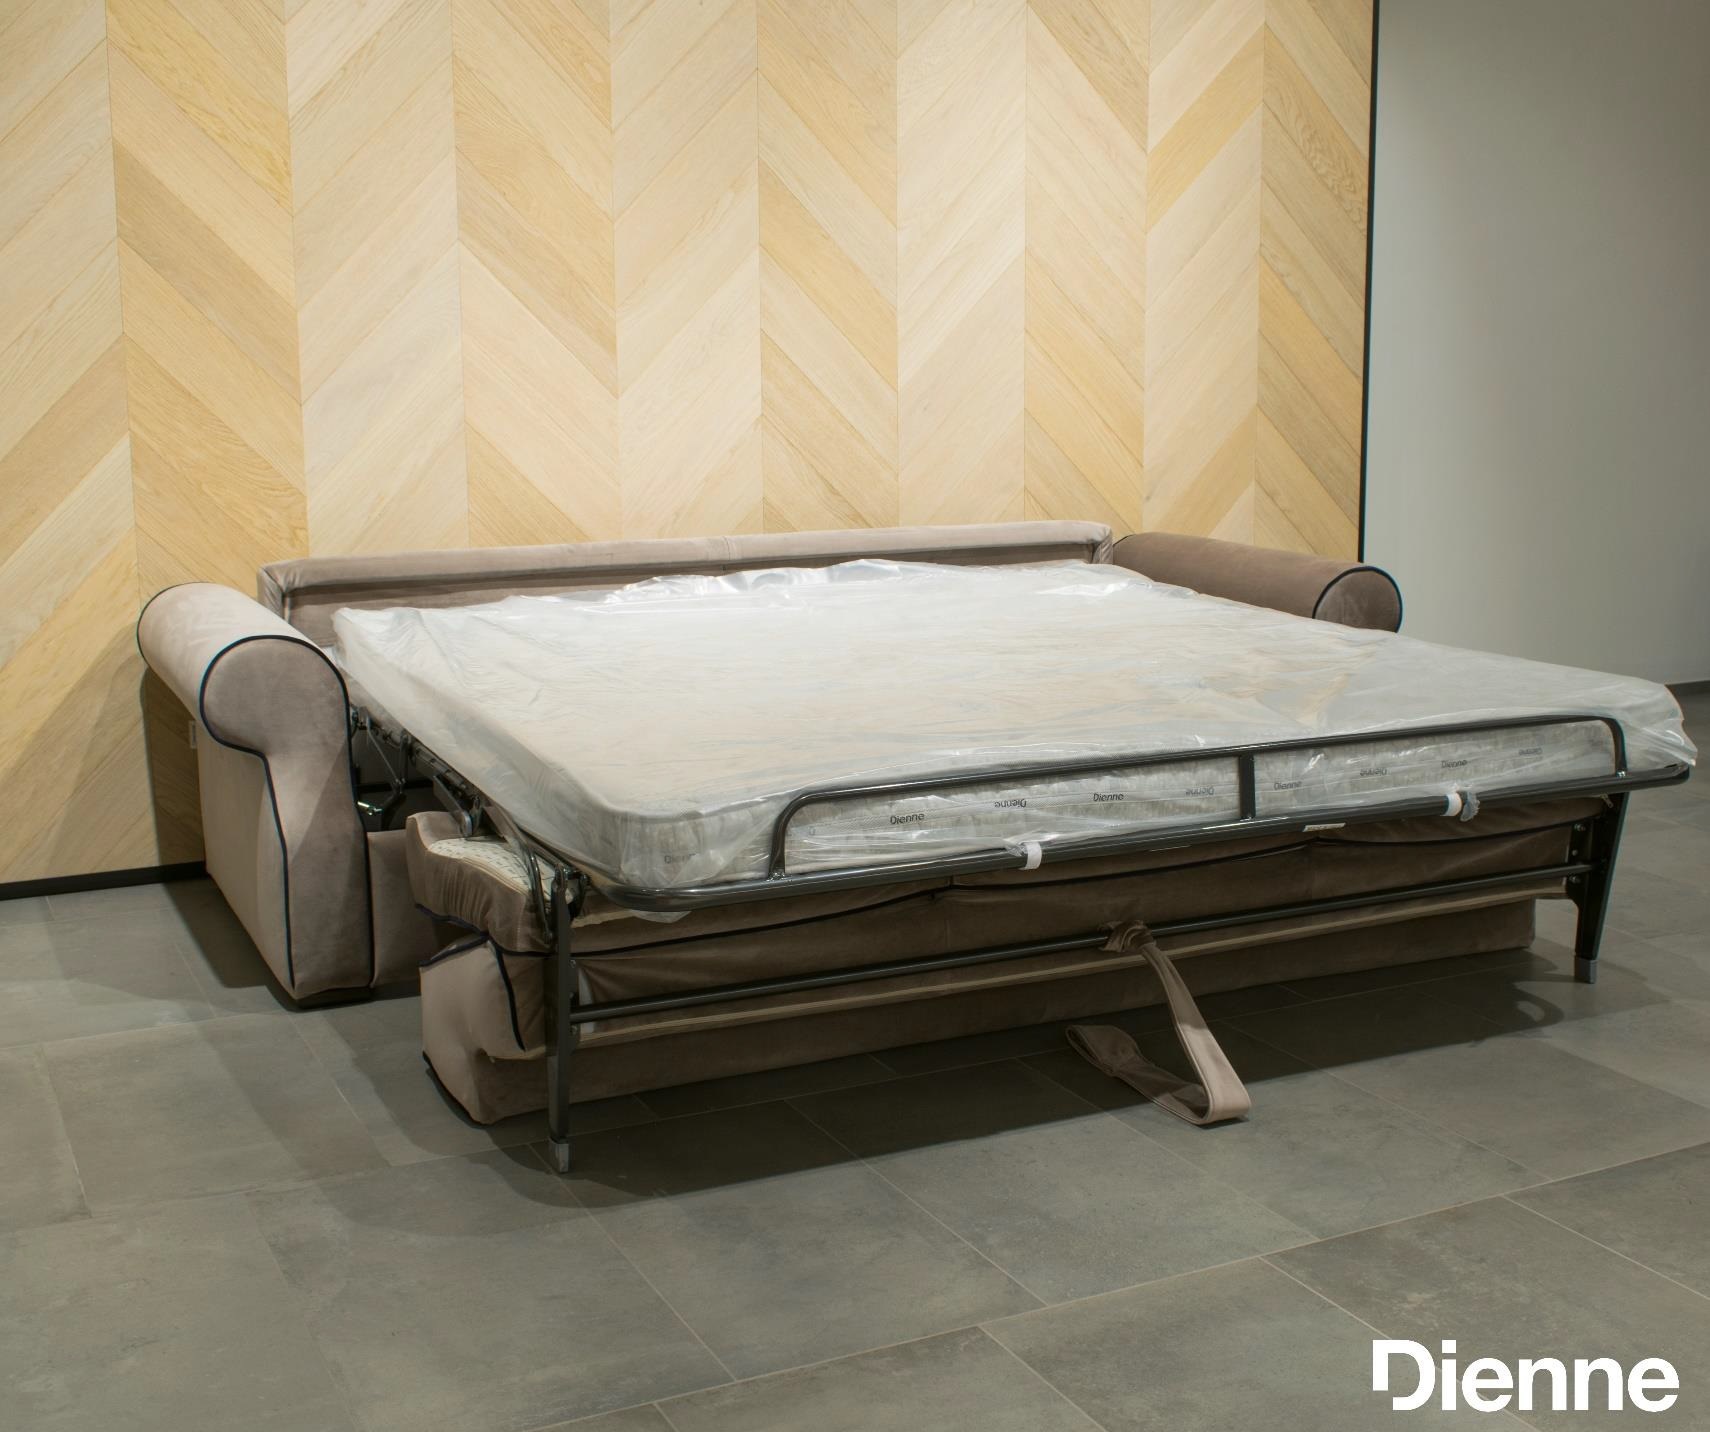 Купить Диван-кровать CHANTAL Dienne в магазине итальянской мебели Irice home фото №2